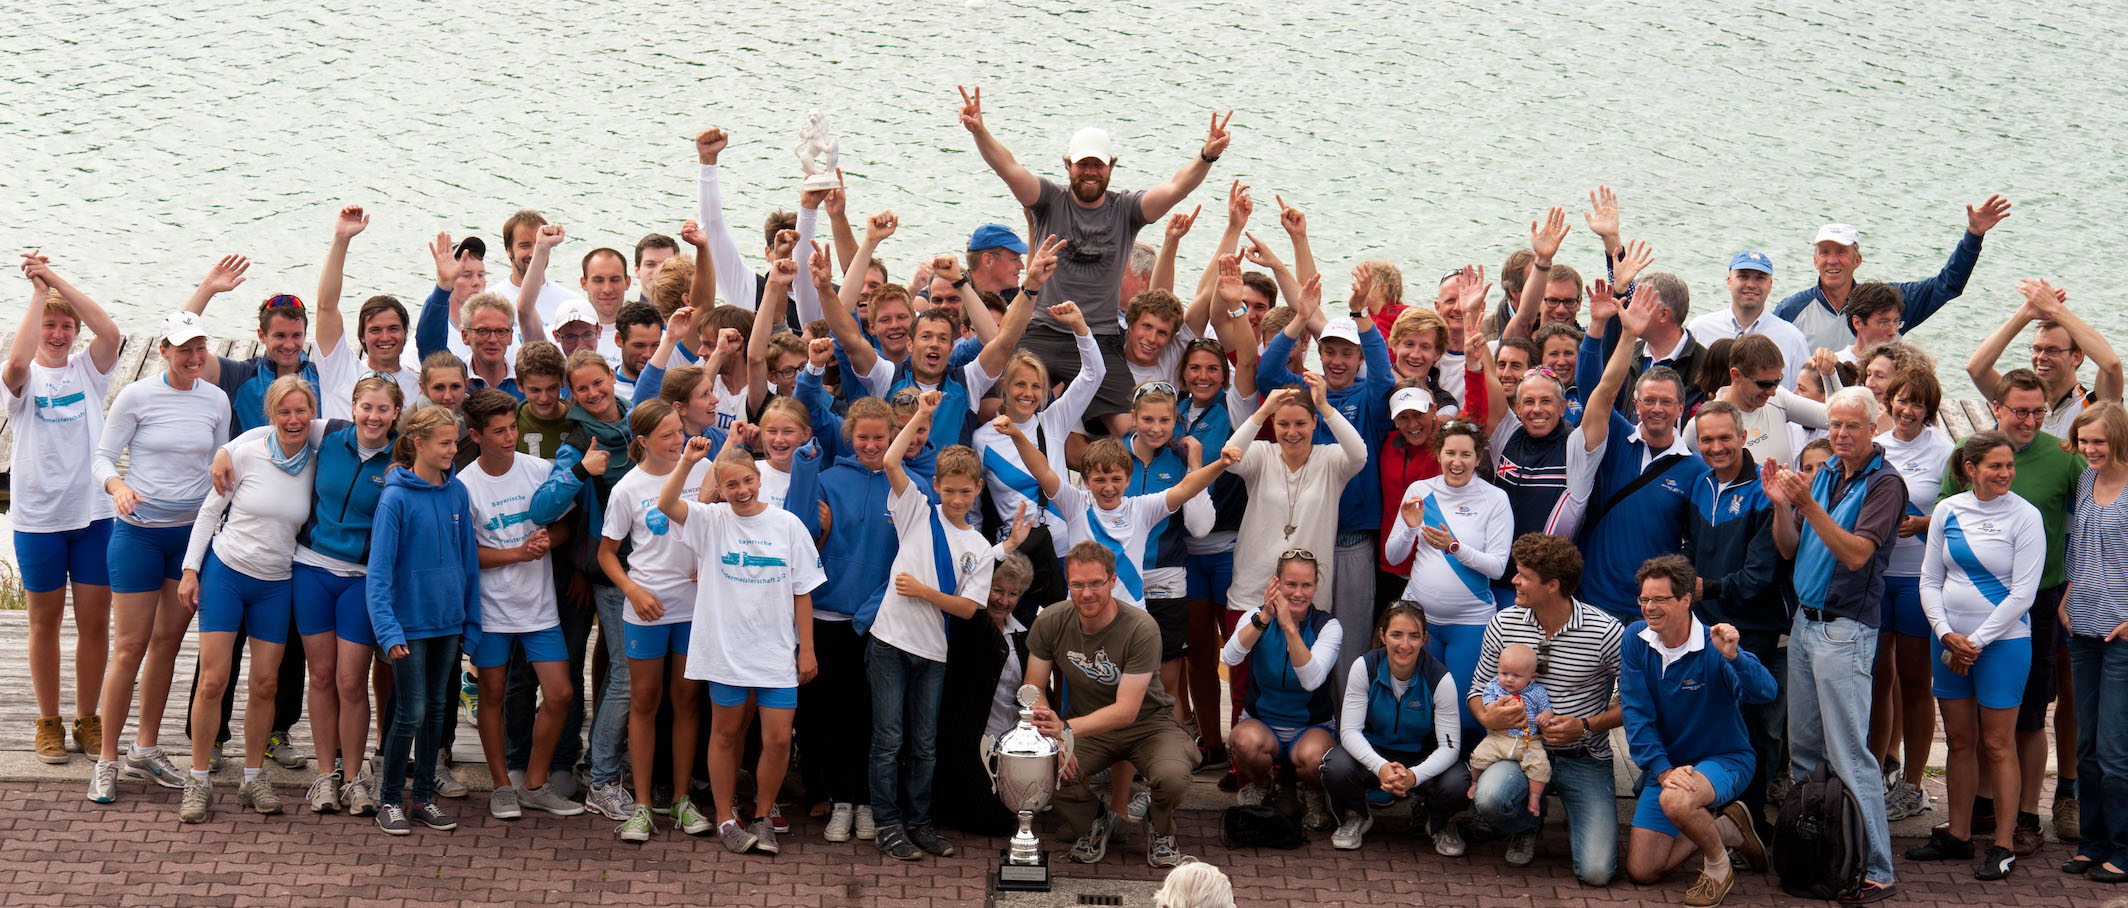 Ein Gruppenfoto von Ruderern in blau-weißer Kleidung. Einige Ruderer heben ihre Hände zum Jubel, während sie sich vor einem See befinden.